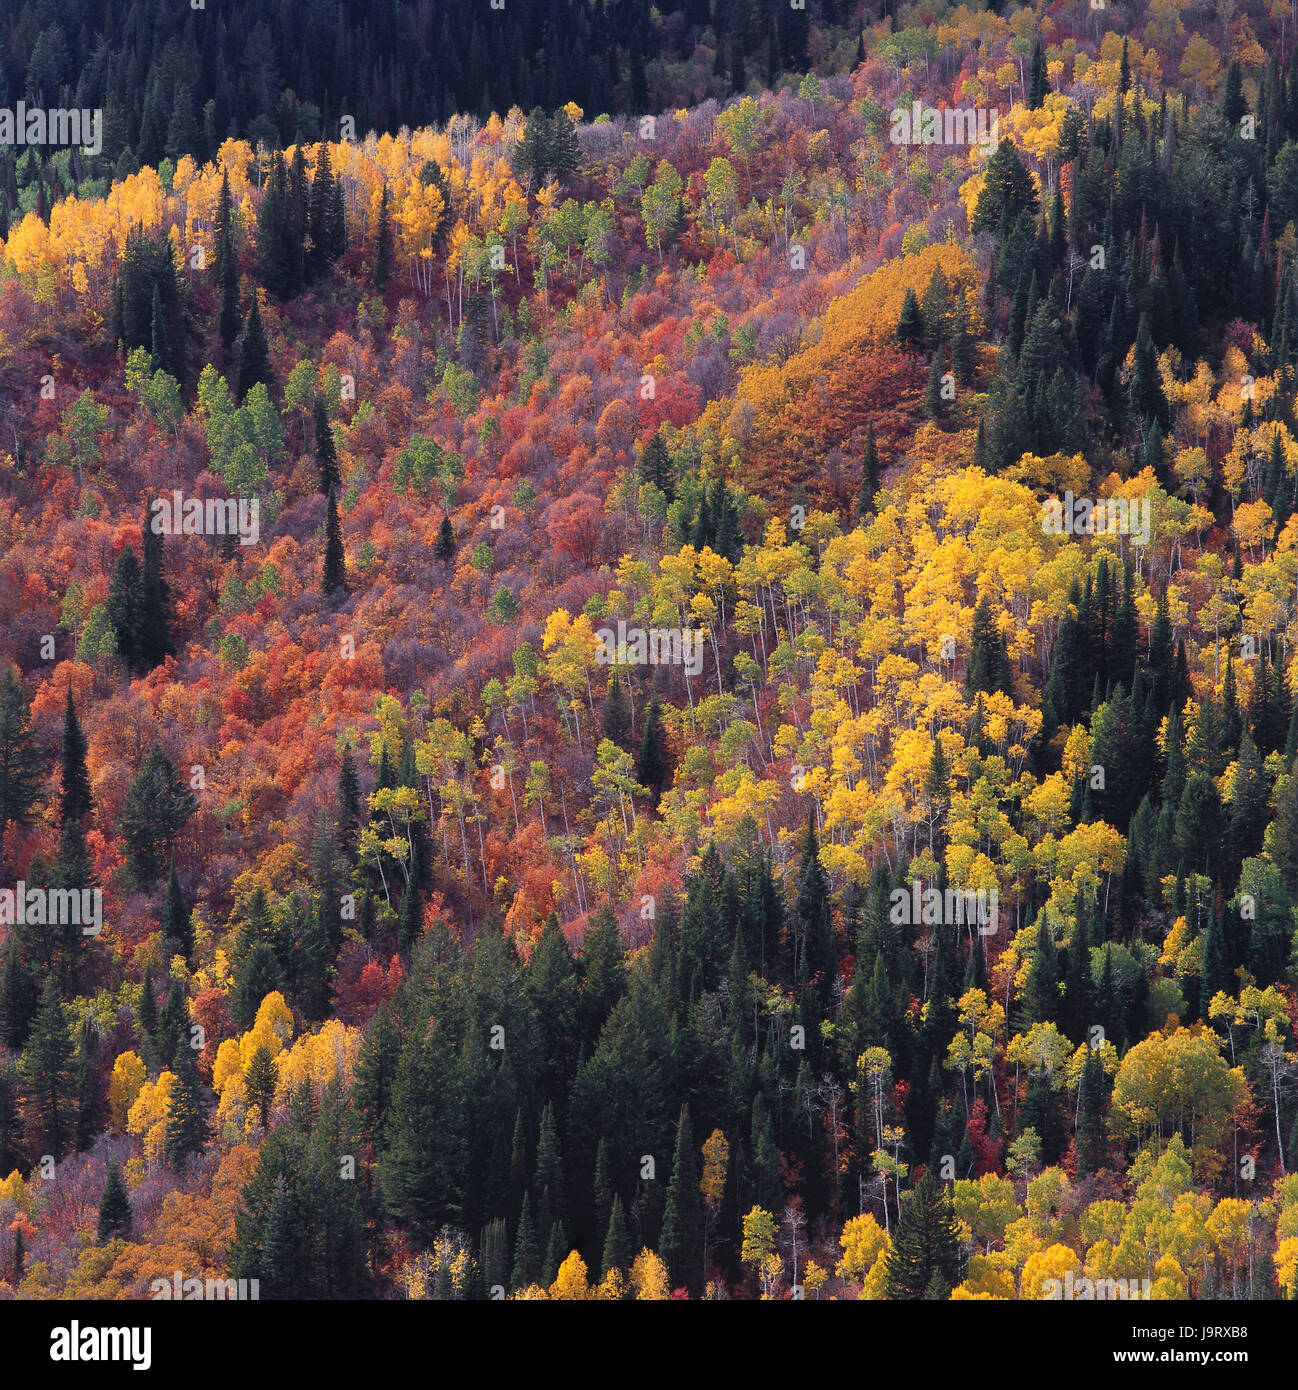 Gli STATI UNITI D'AMERICA,Utah,Uinta montagne,Timpanogos regione,legno,alberi,l'autunno la colorazione,natura,vegetazione,colori,modifica,modifica,nessuno,deserta,alberi,scenario,fogliame,fogliame di autunno,latifoglie,Legno di autunno,uno spettacolo della natura,foresta mista,abeti,aspens,colore tuning,autunno,stagioni,brillantemente,colorfully,vicino,pacificamente,vividamente,radiant,pittorescamente atmosferica,,icona,piazza di respirazione,time out,il disegno di un respiro profondo,aura,l'armonia,vigore,viaggiare,Vacanza,riposo,bellezza,silenzio,modifica,magic,rosso,giallo,verde, Foto Stock